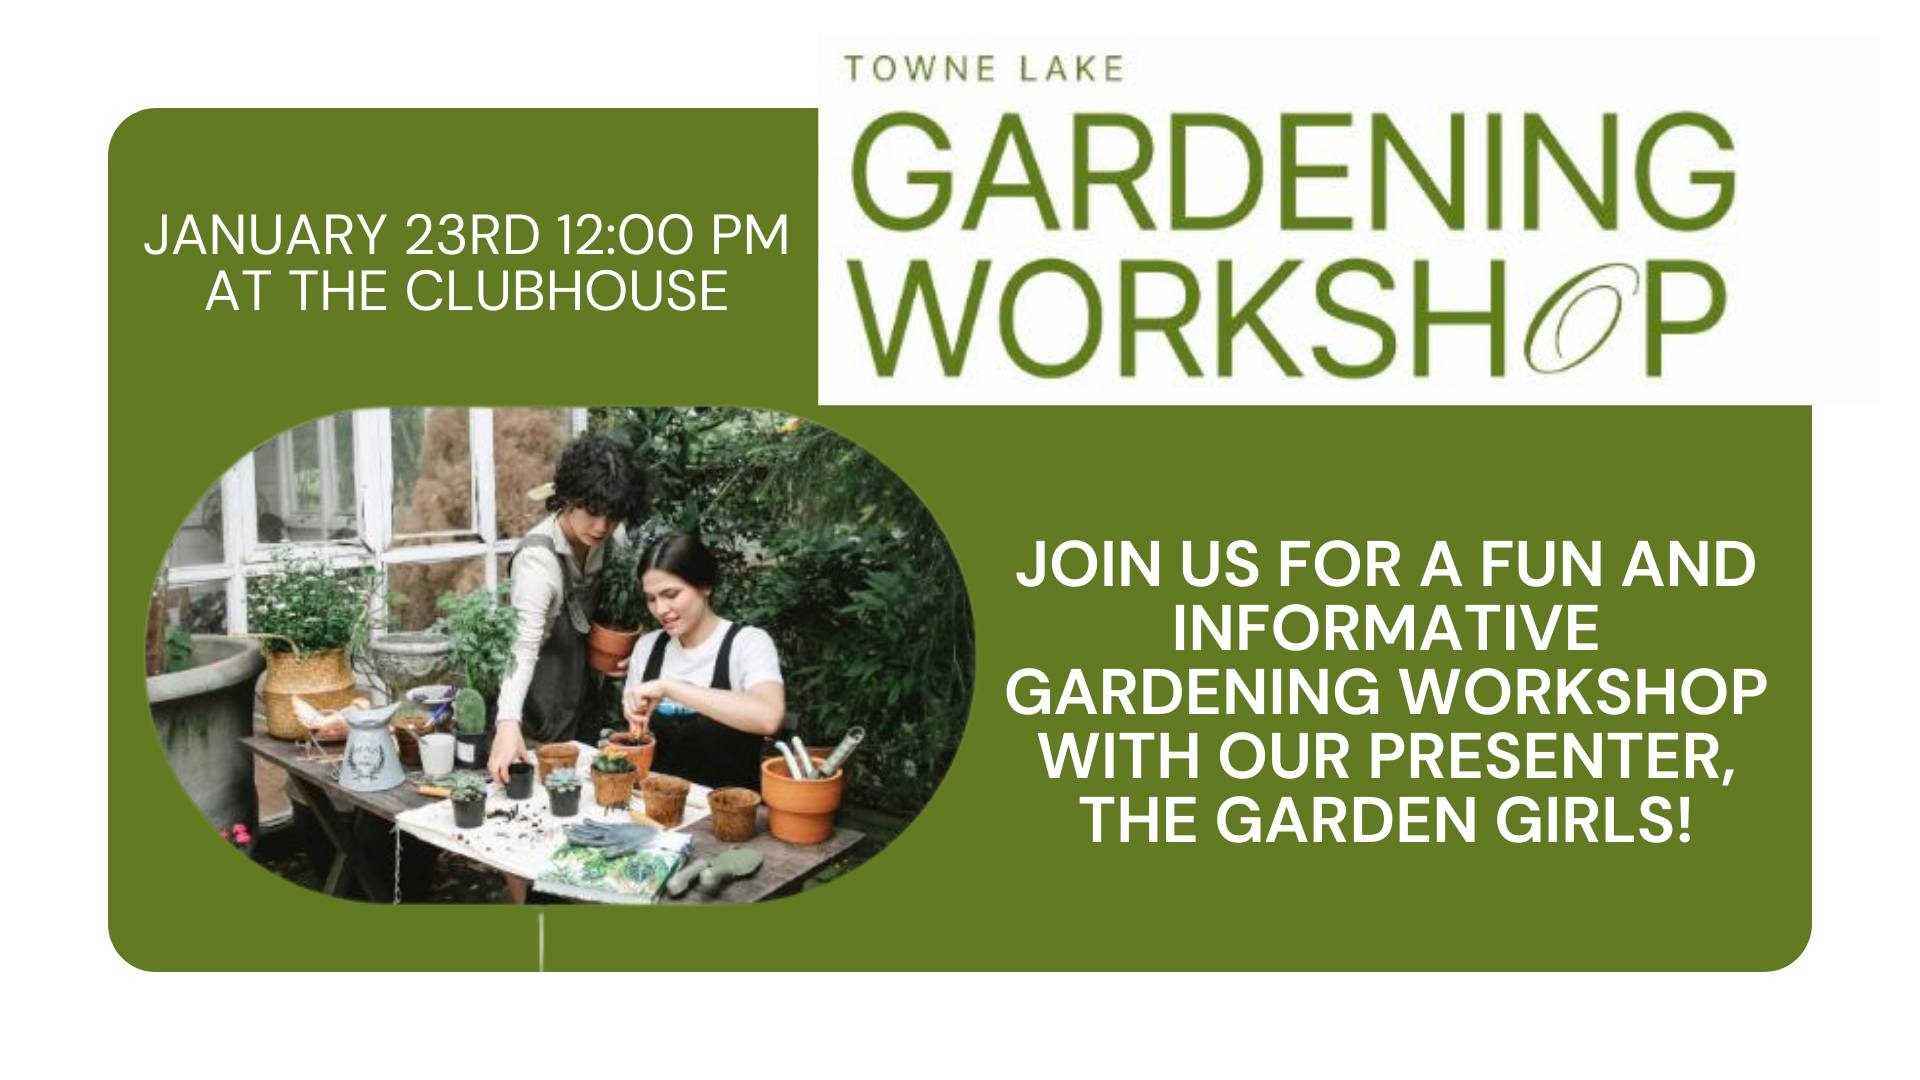 Garden Girls to Host Gardening Workshop